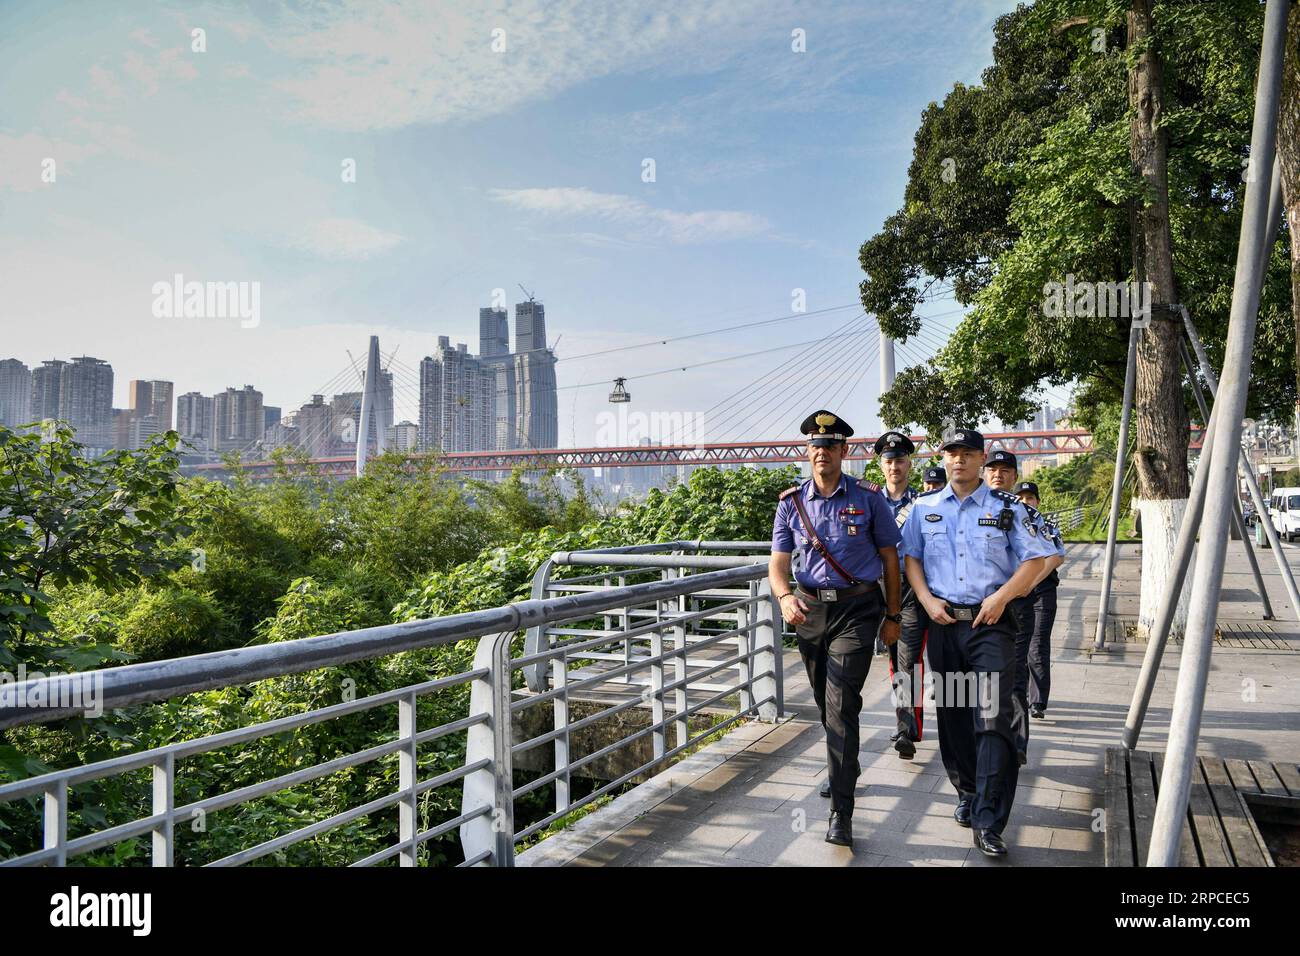 (190702) -- CHONGQING, 2 luglio 2019 -- polizia cinese e italiana pattuglia nel distretto di Nan An nel comune di Chongqing della Cina sud-occidentale, 2 luglio 2019. La polizia di Chongqing ha lanciato una pattuglia congiunta con le loro controparti italiane il 26 giugno, secondo la polizia locale. Quattro poliziotti cinesi che parlavano fluentemente inglese e italiano si unirono alla pattuglia con due poliziotti italiani. Pattugliamento in località turistiche popolari del comune, i poliziotti italiani aiuteranno ad affrontare le questioni legate ai turisti italiani durante la pattuglia congiunta di 10 giorni. La polizia italiana ne ha Foto Stock